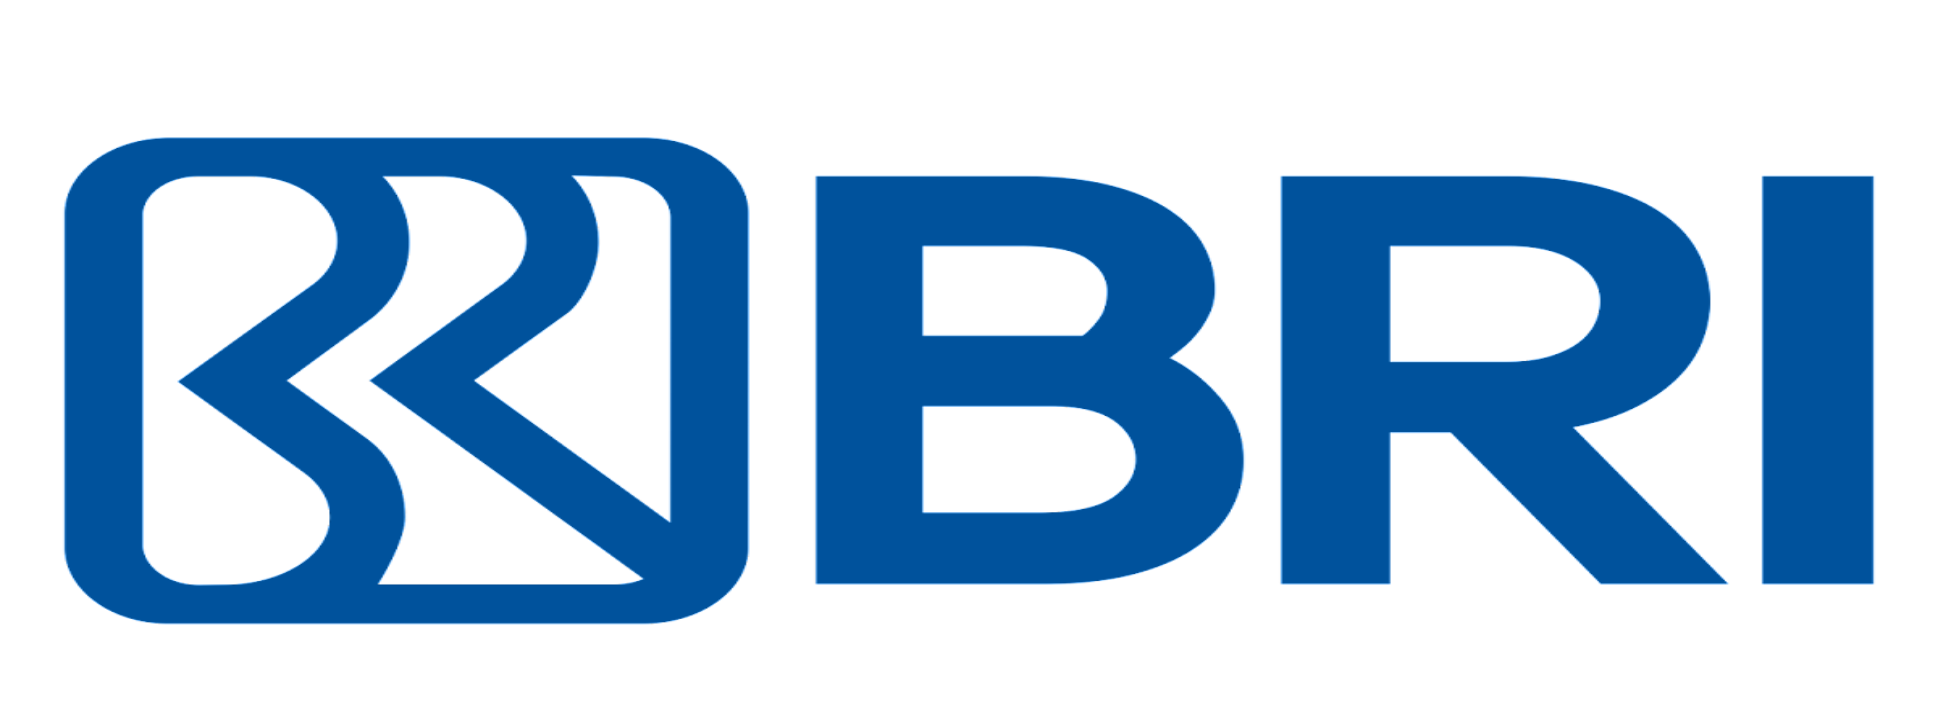 Logo BRI